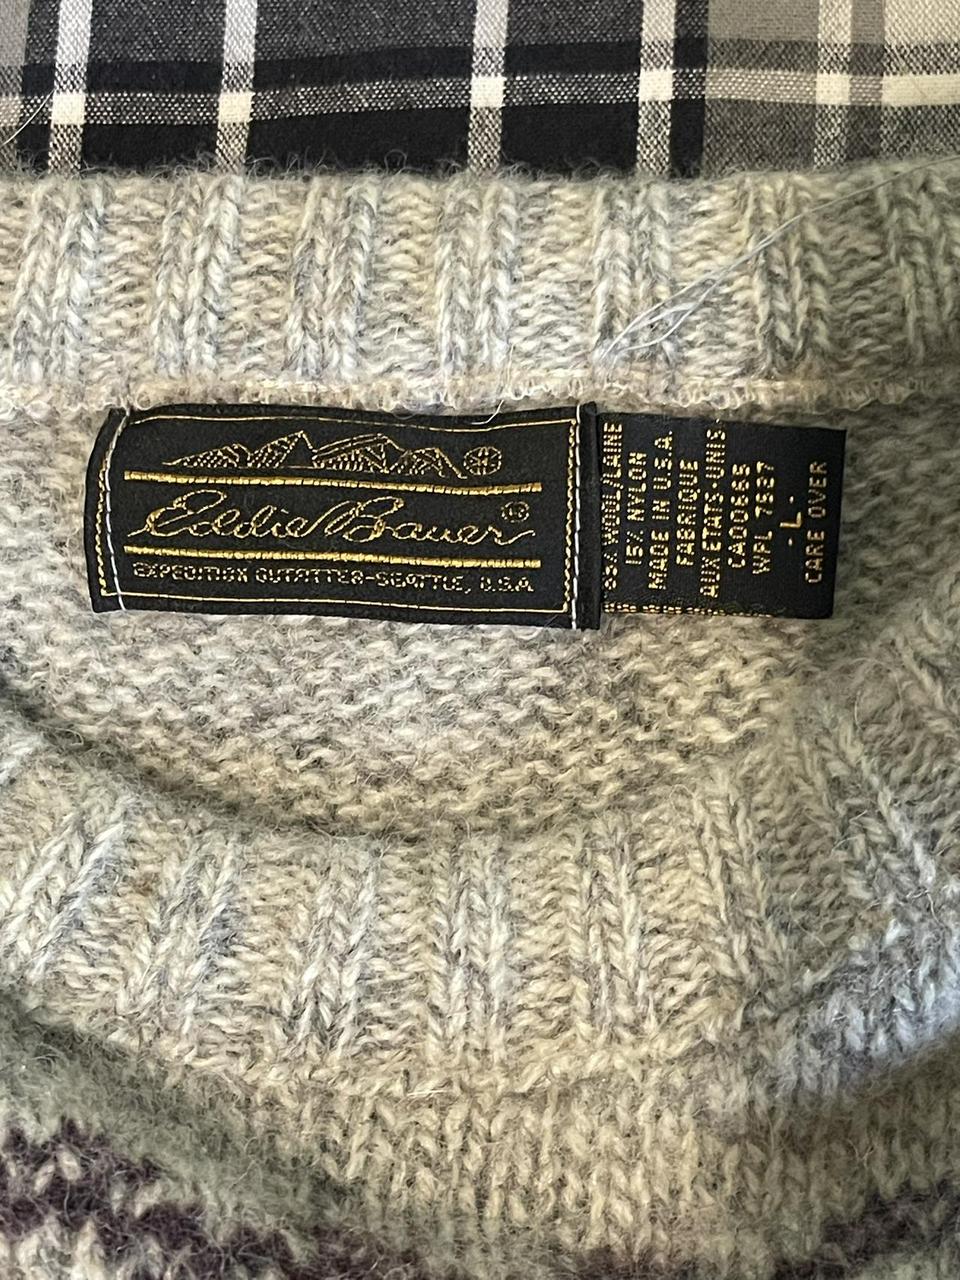 Eddie Bauer Vintage Sweater (runs larger) - Depop